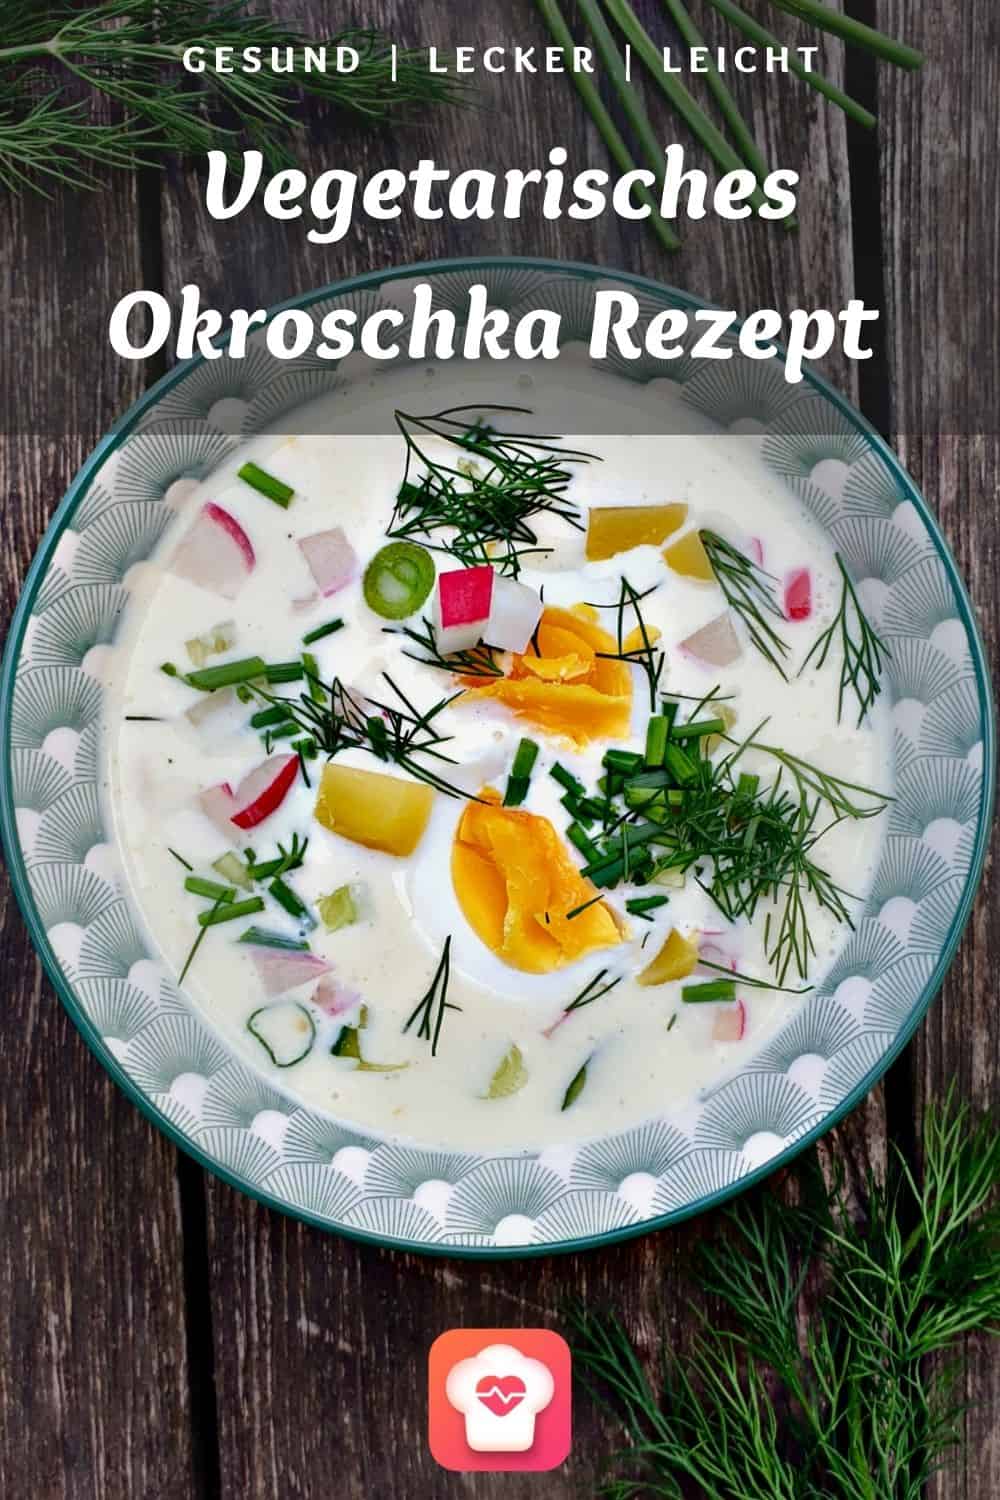 Vegetarisches Okroschka Rezept - Kalte russische Suppe